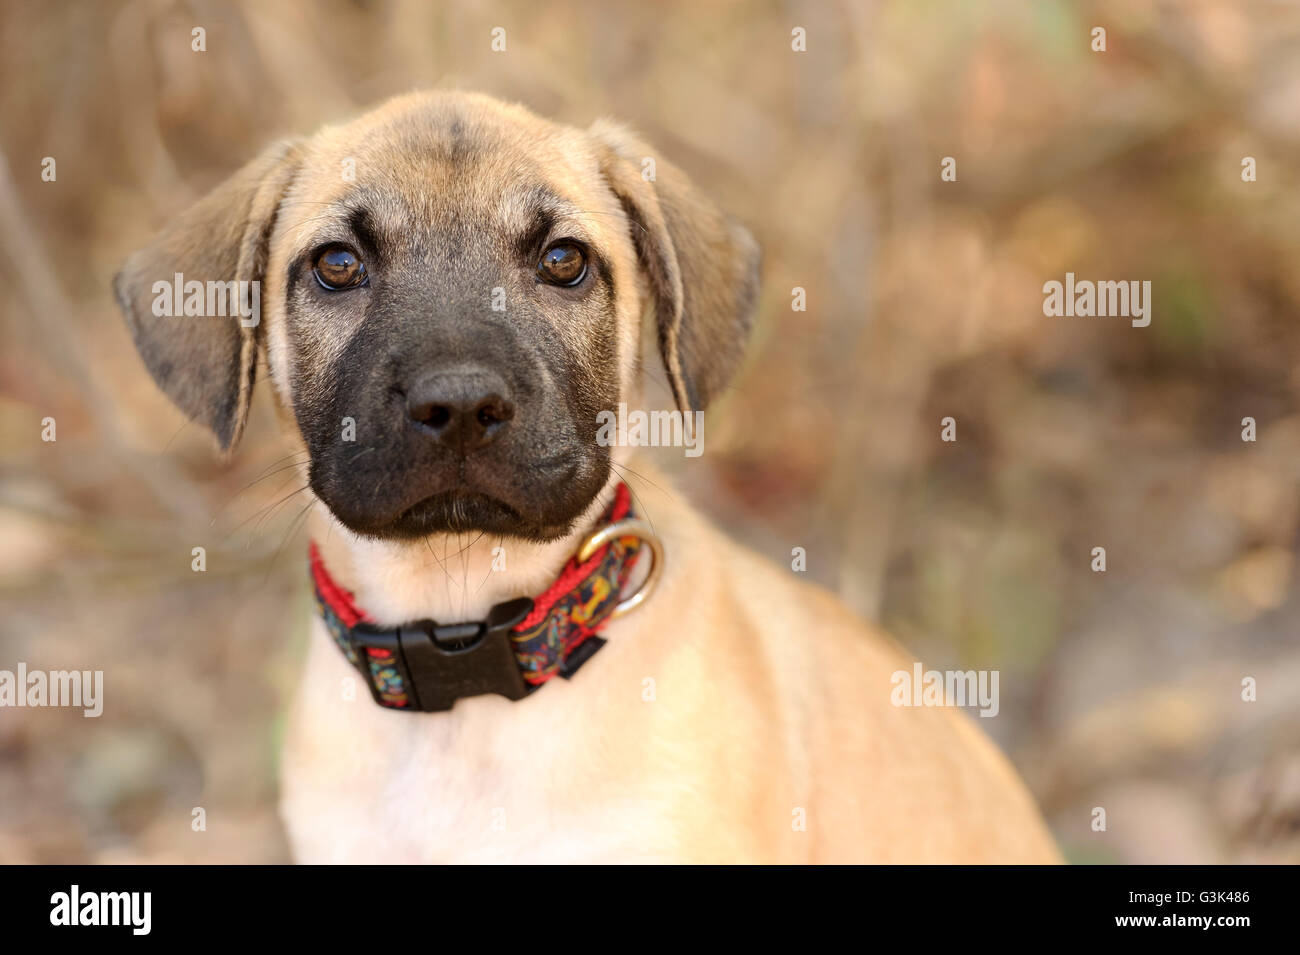 Chiot Mignon est un gros plan d'une adorable chiot chien vous regarde avec ces grands yeux adorables. Banque D'Images